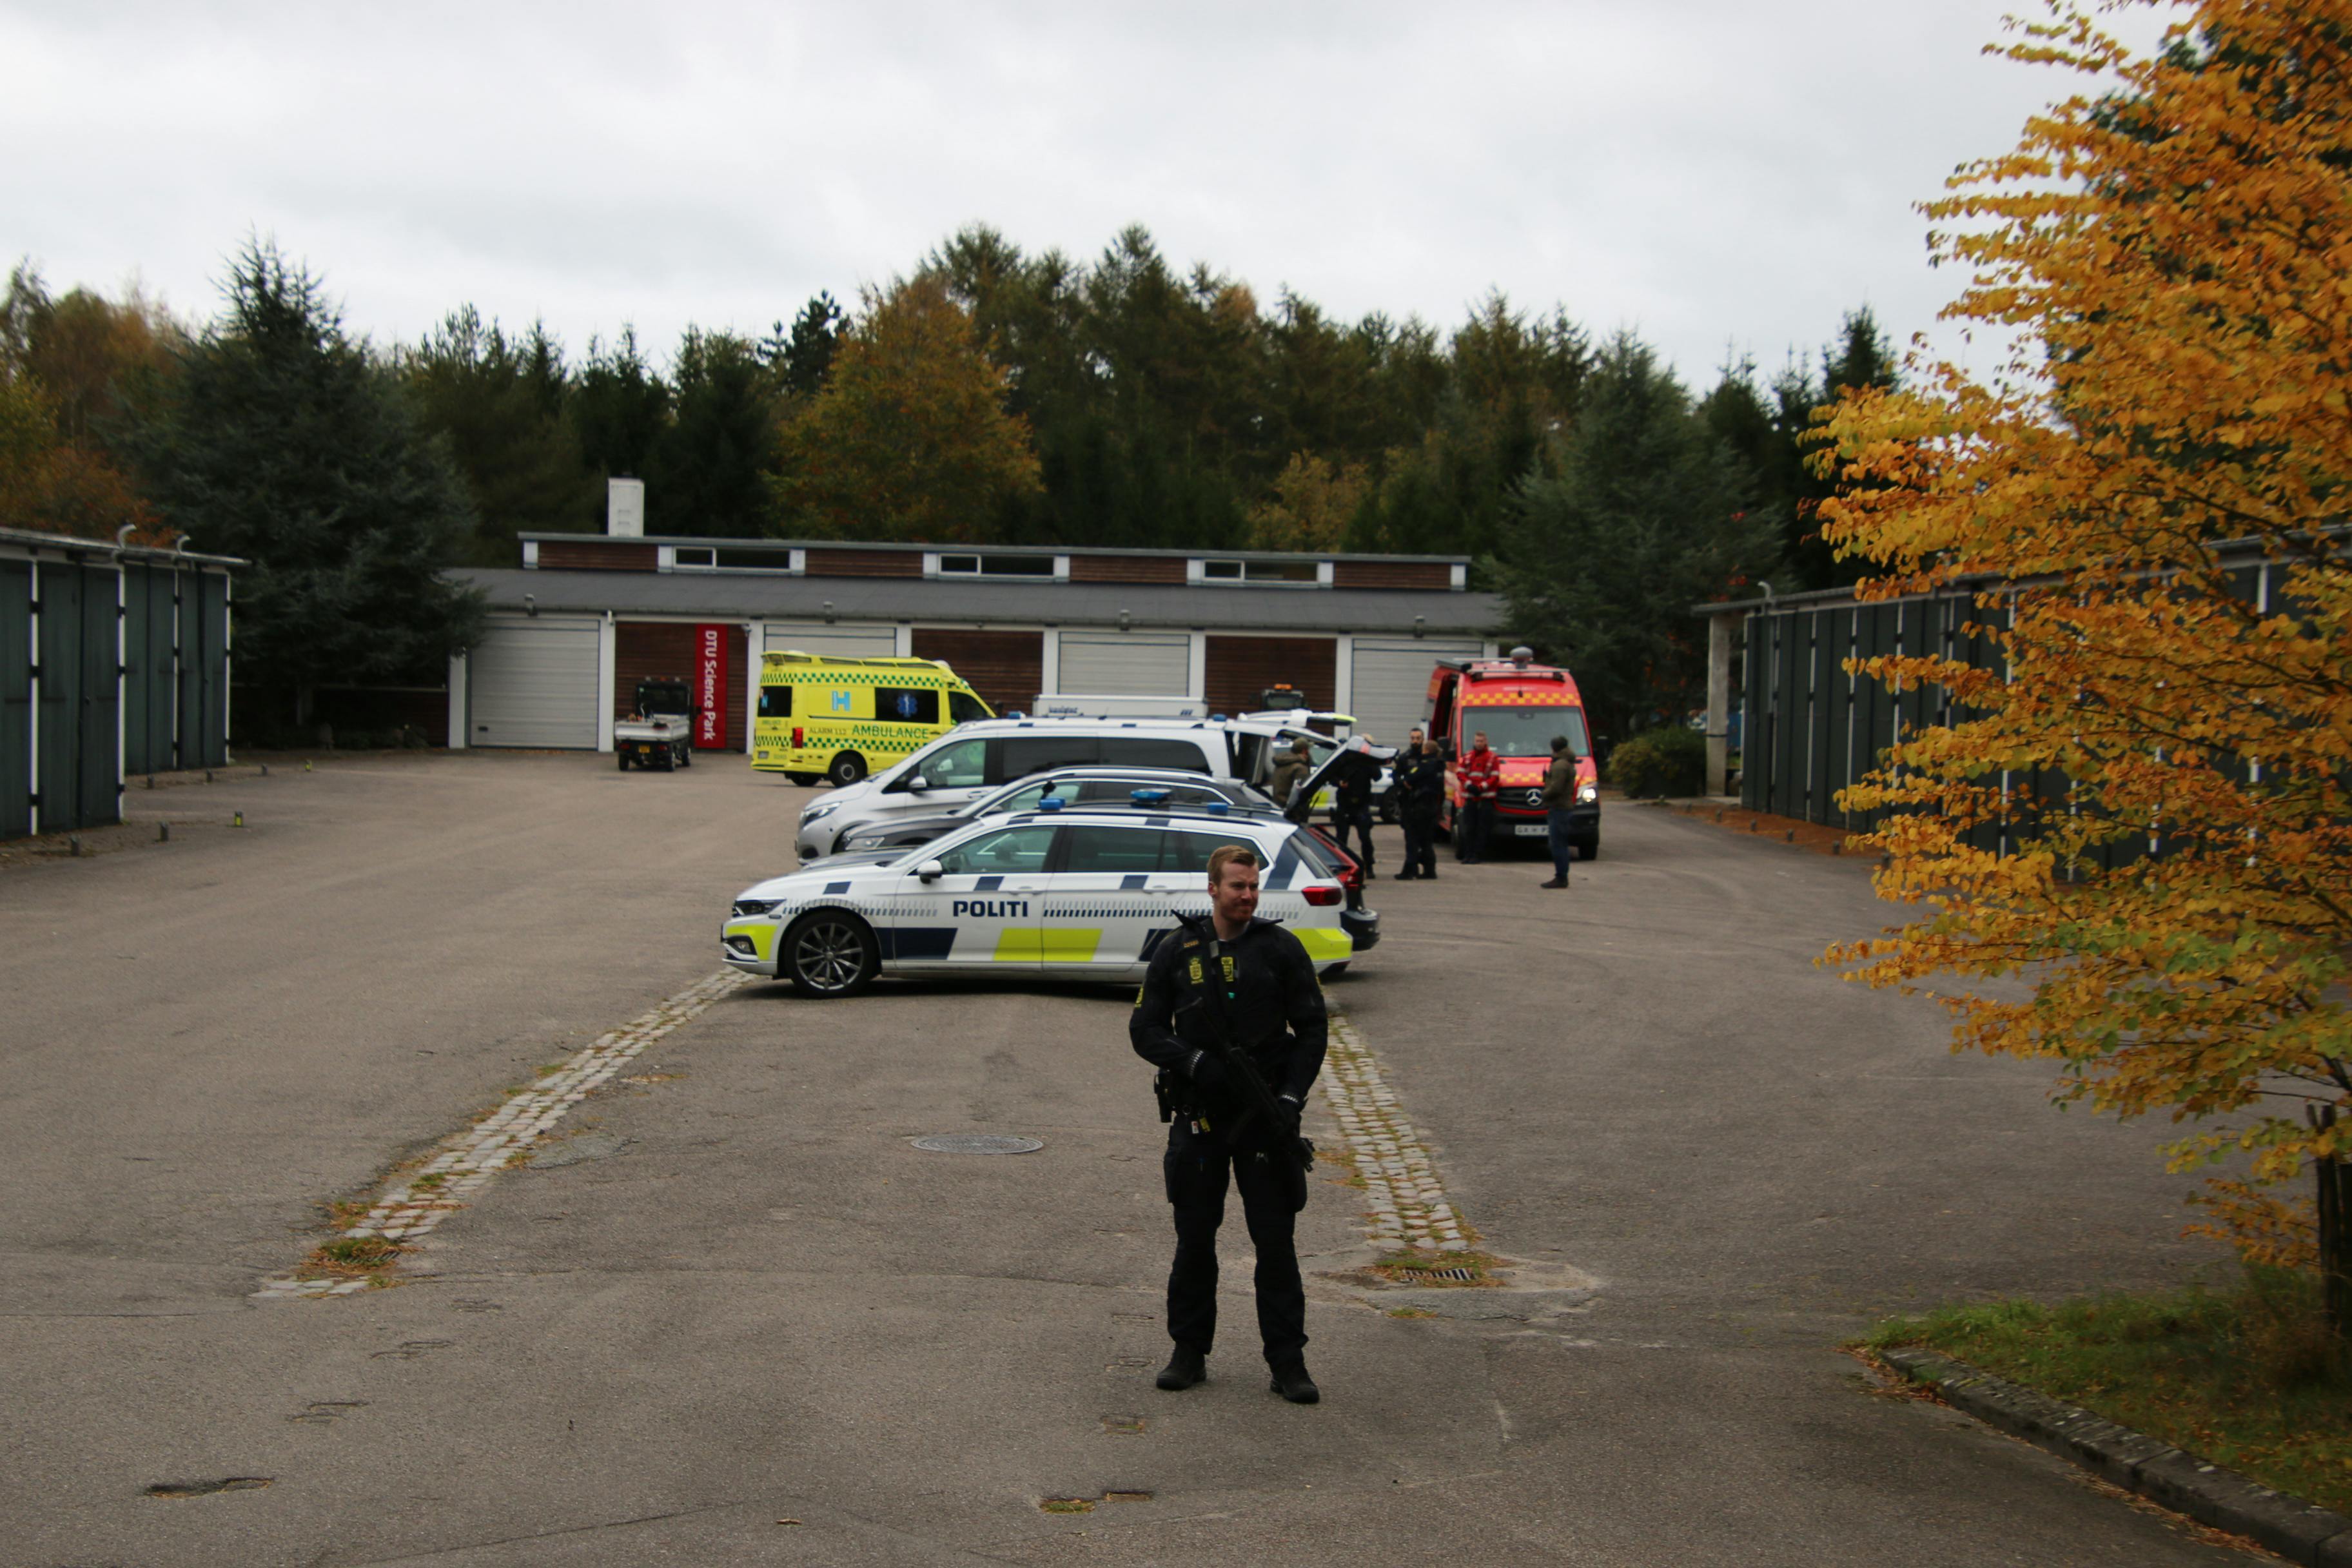 Politiet er massivt til stede i Hørsholm